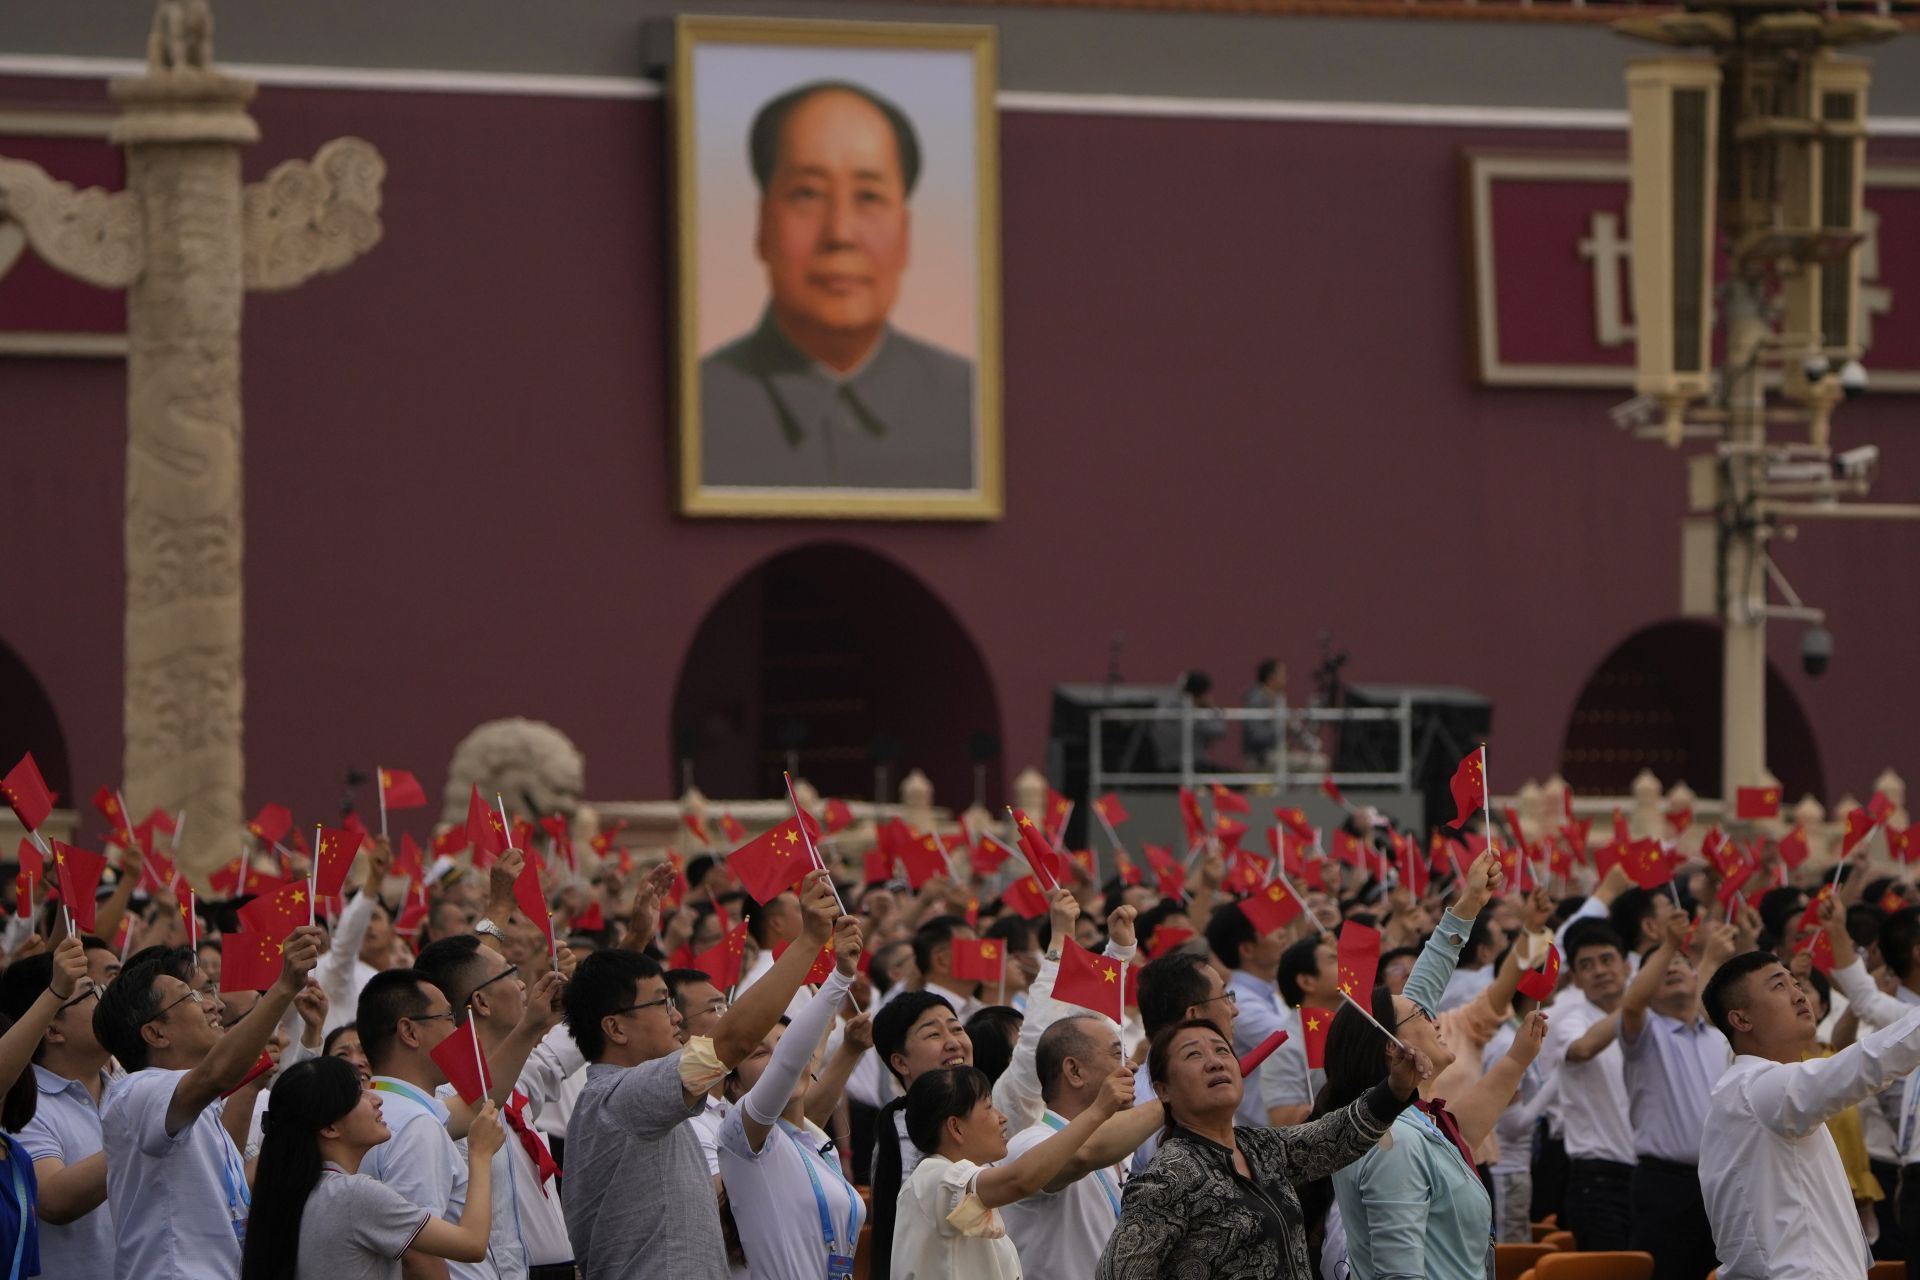  Хората развяват китайски флагове под огромен портрет на починалия водач Мао Дзедун по време на гала във връзка 100-годишнината от основаването на ръководещата китайска комунистическа партия на портата Тянанмън в Пекин 